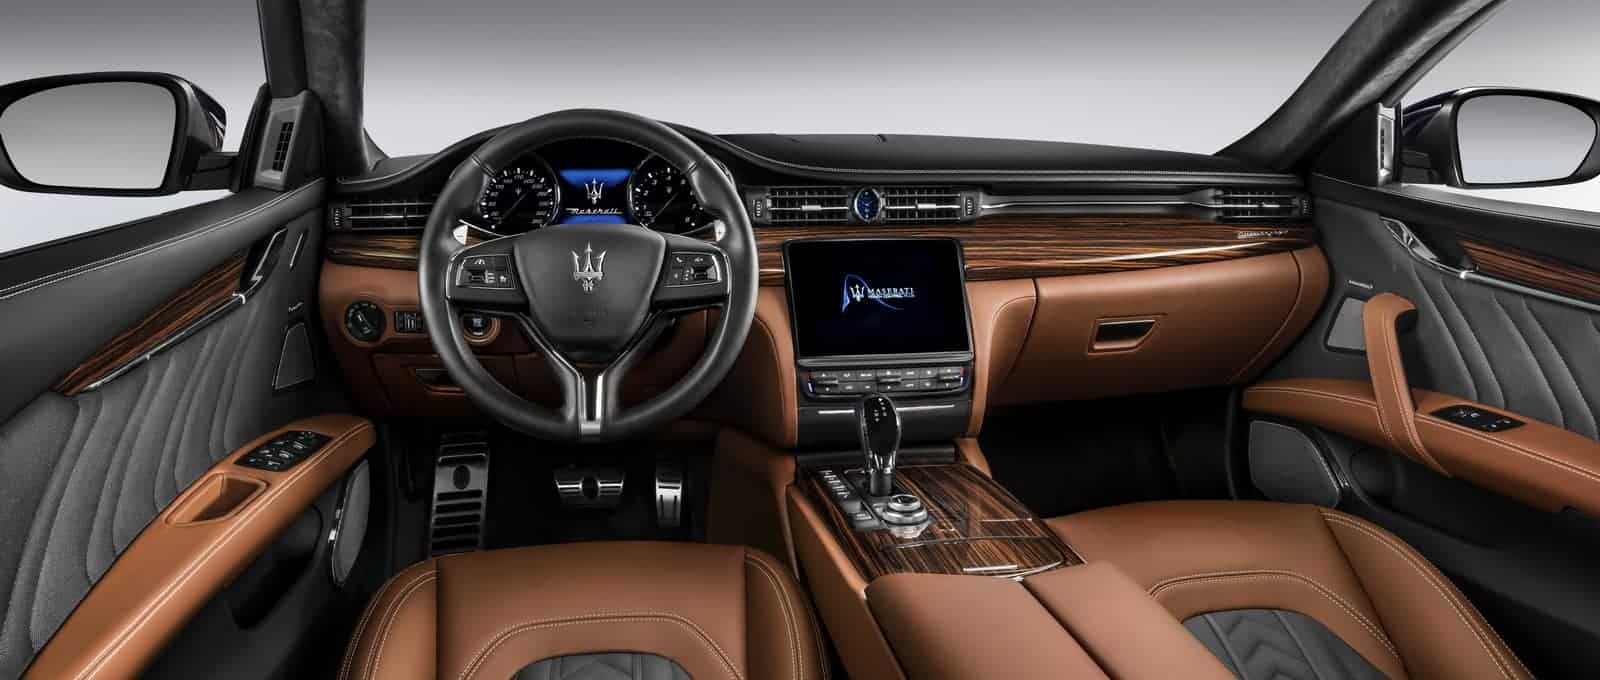 Maserati-Quattroporte-update-10